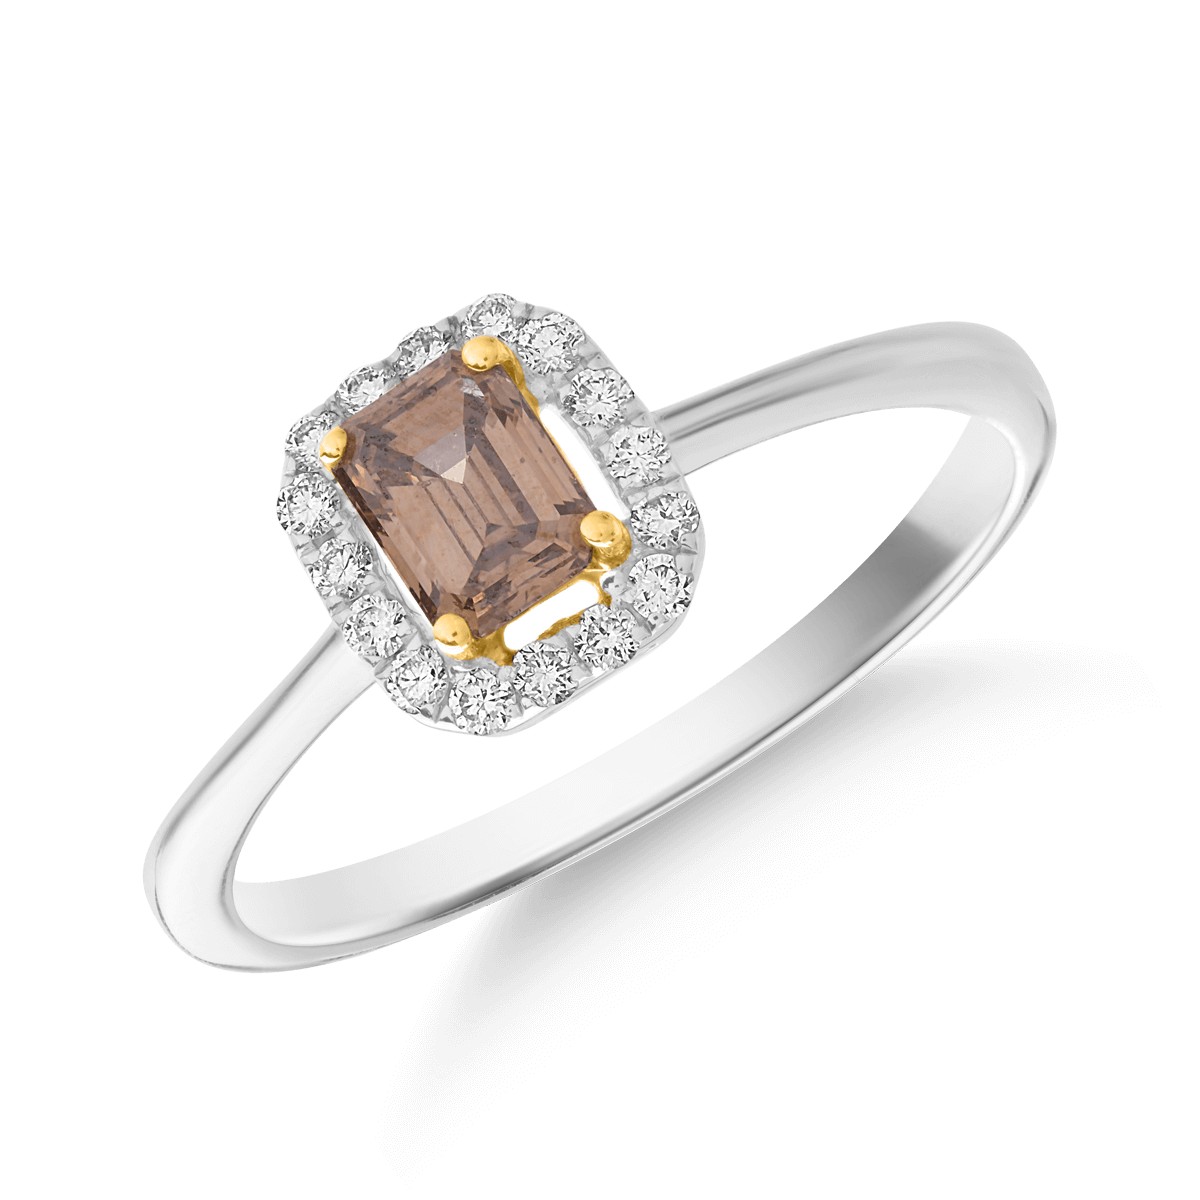 Gyűrű 18K-os fehér aranyból 0.48ct barna gyémánttal és 0.14ct átlátszó gyémánttal.